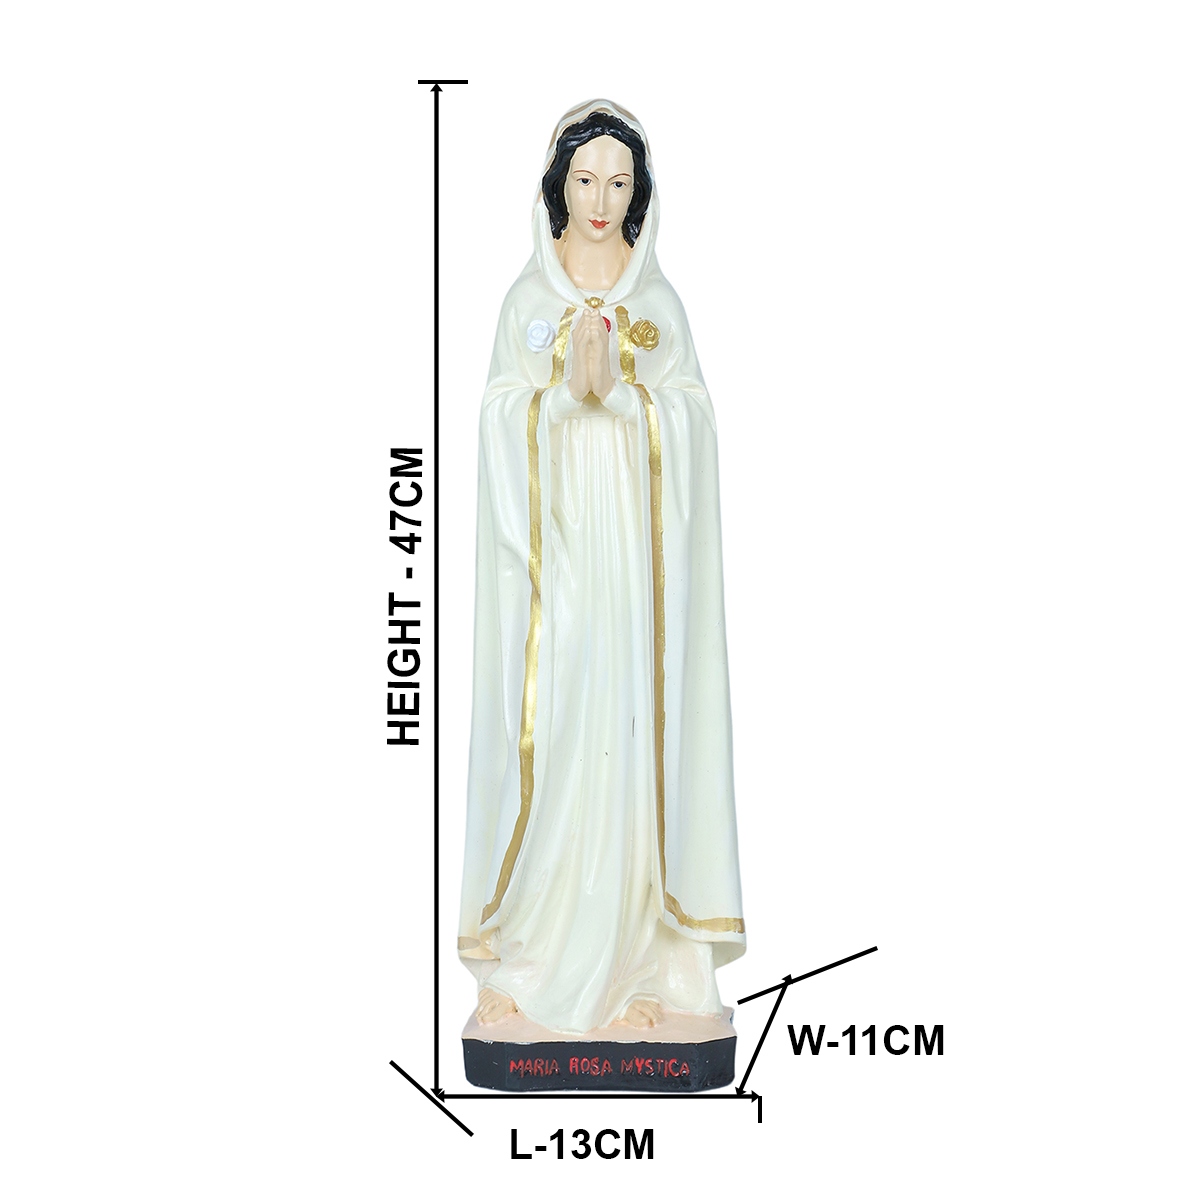 Maria Rosa Mystica statue